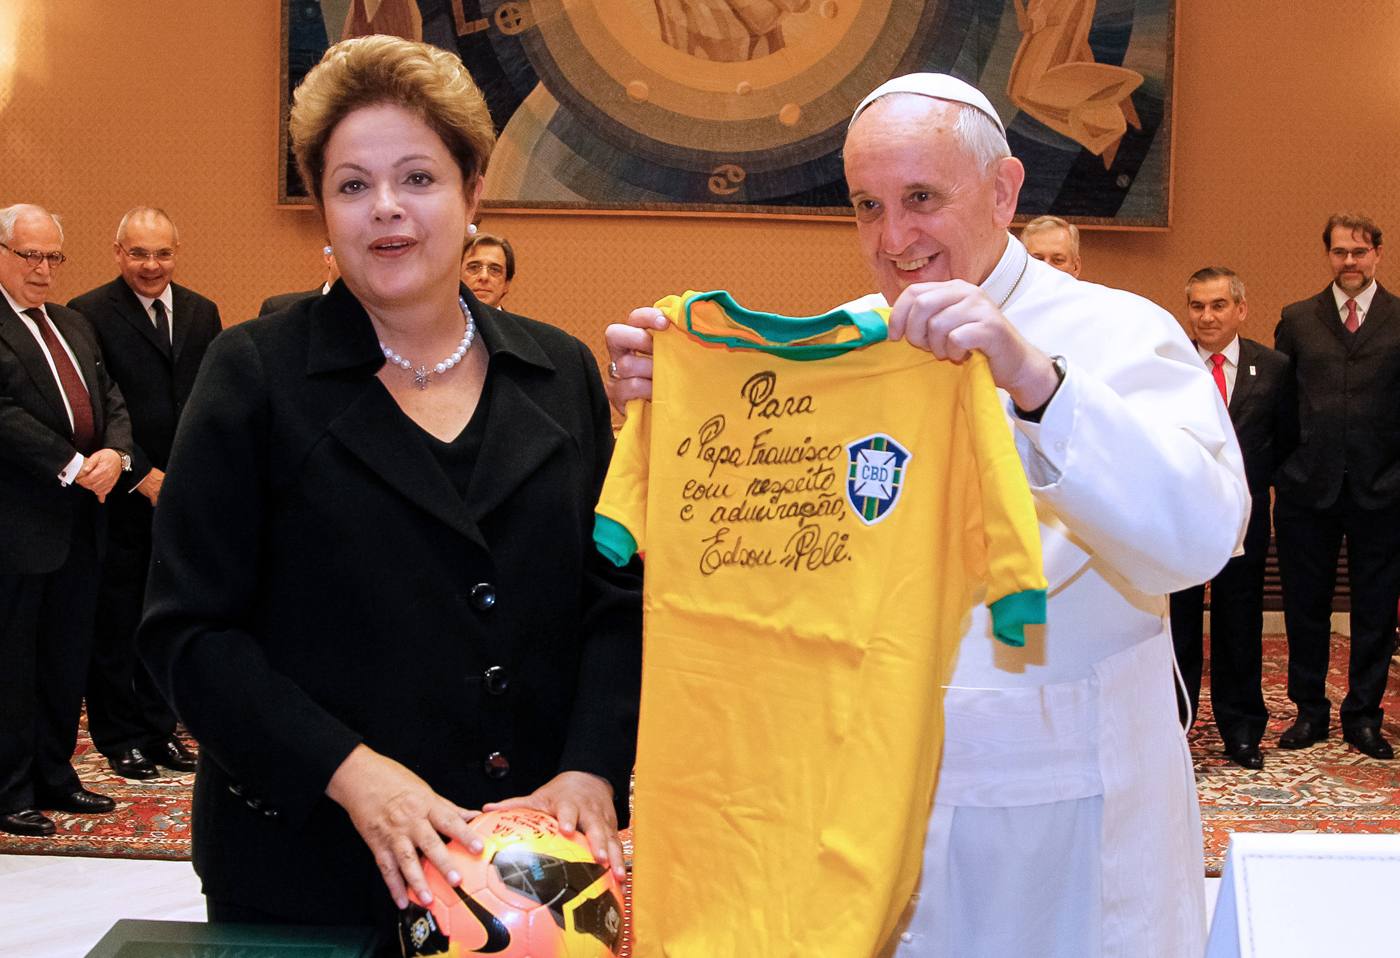 El Papa pidió rezar por Brasil "en este momento triste"